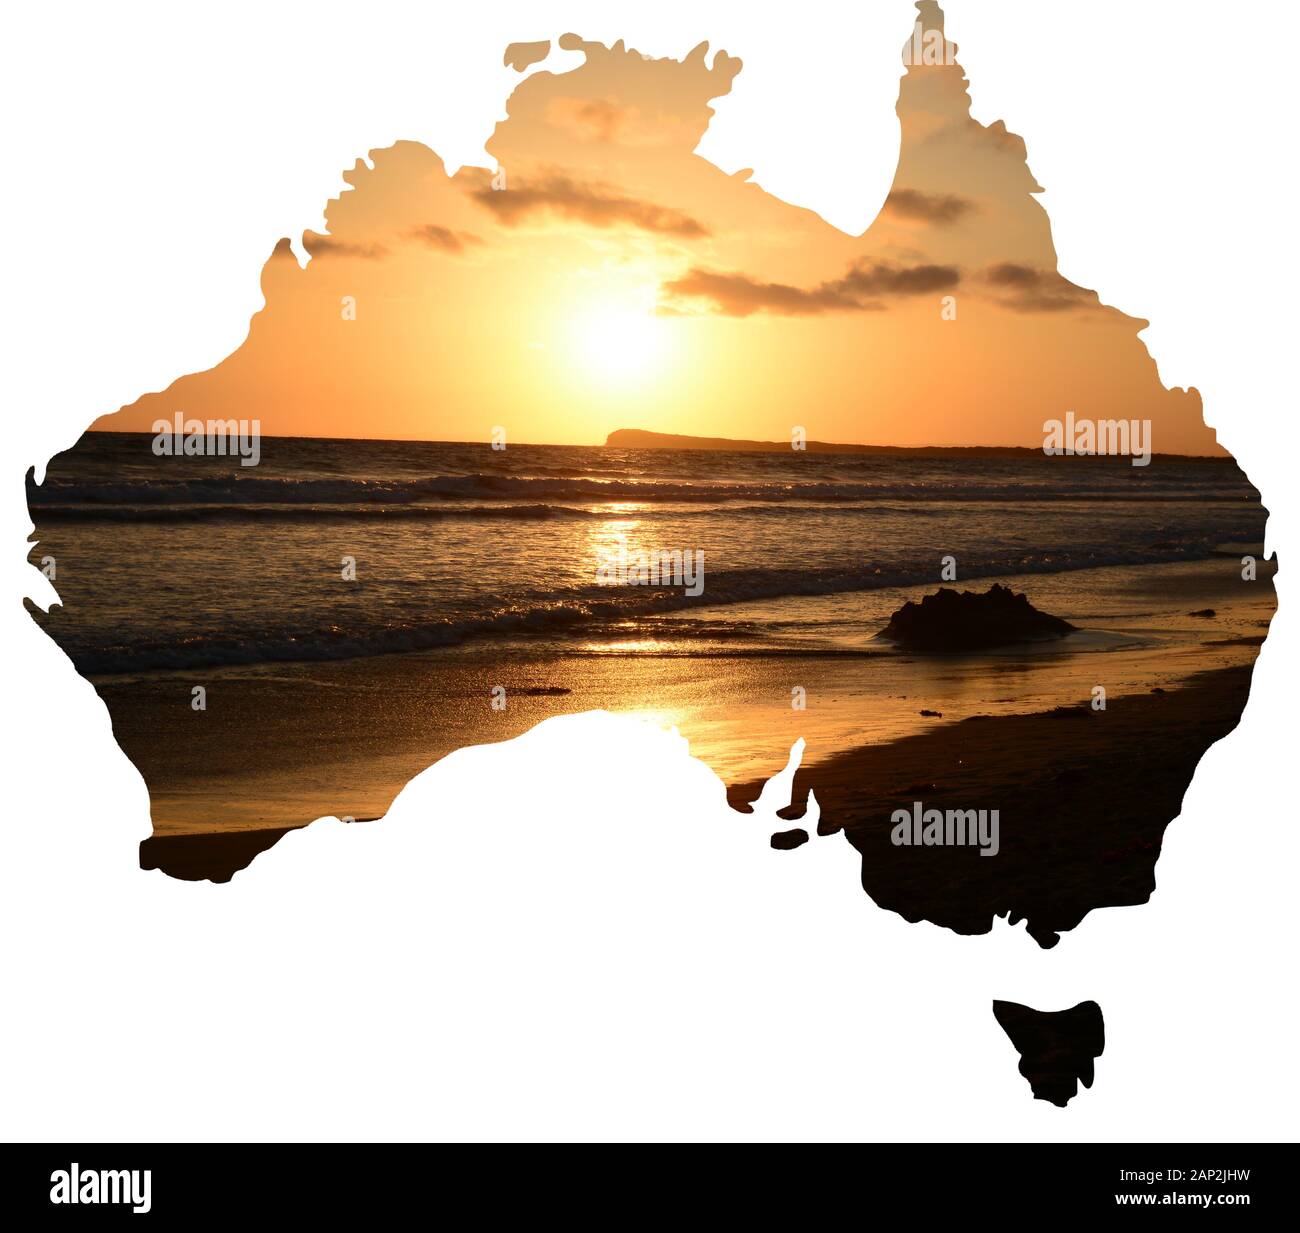 Una serie de vistas de los paisajes naturales y los paisajes de Australia en un mapa del país Foto de stock